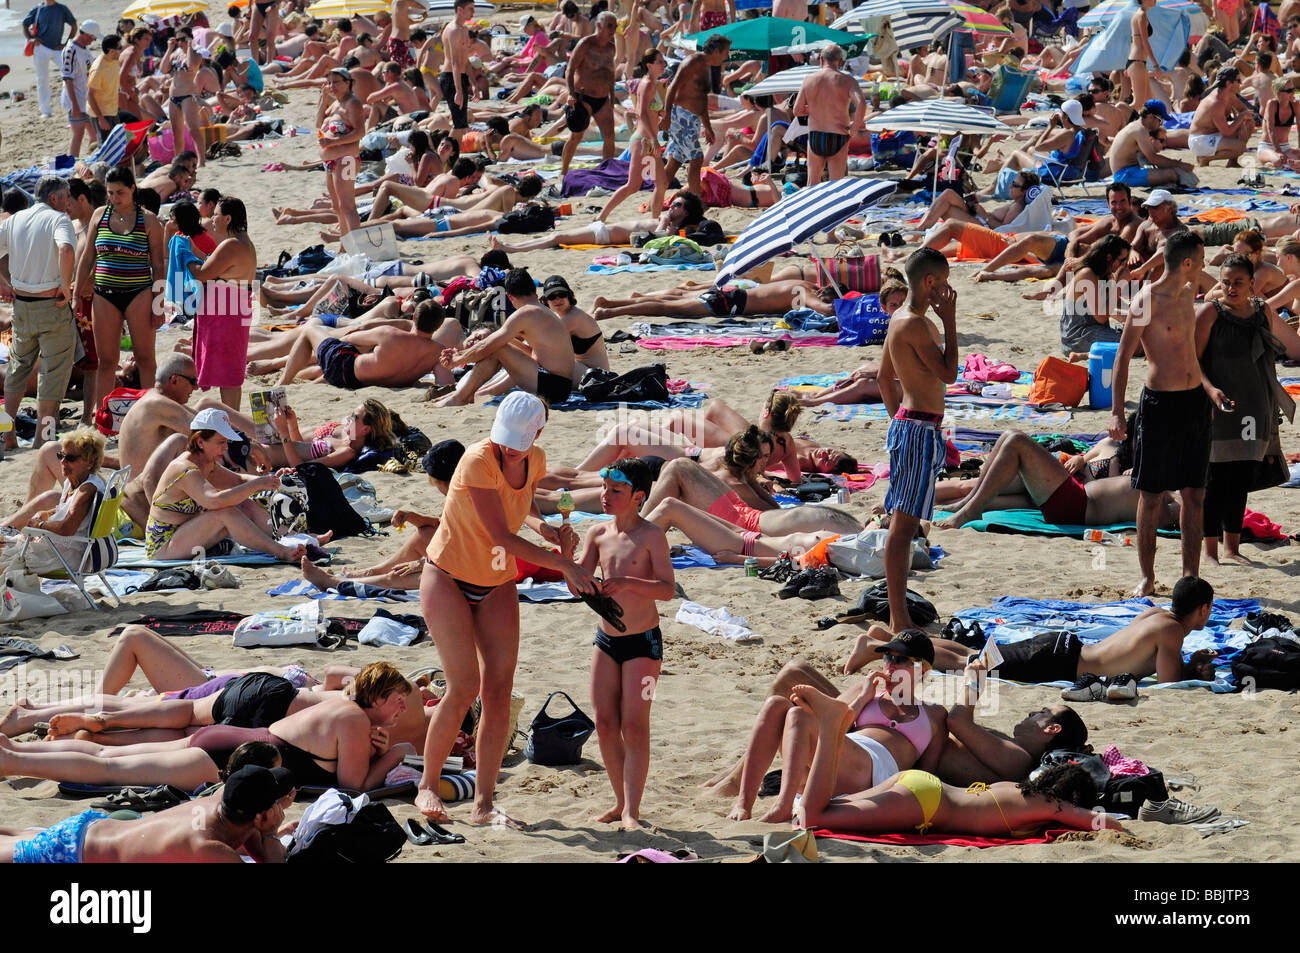 La spiaggia principale sulla Croisette, nel centro di Cannes e la riviera francese, durante il famoso festival del cinema. Il sud della Francia. Foto Stock